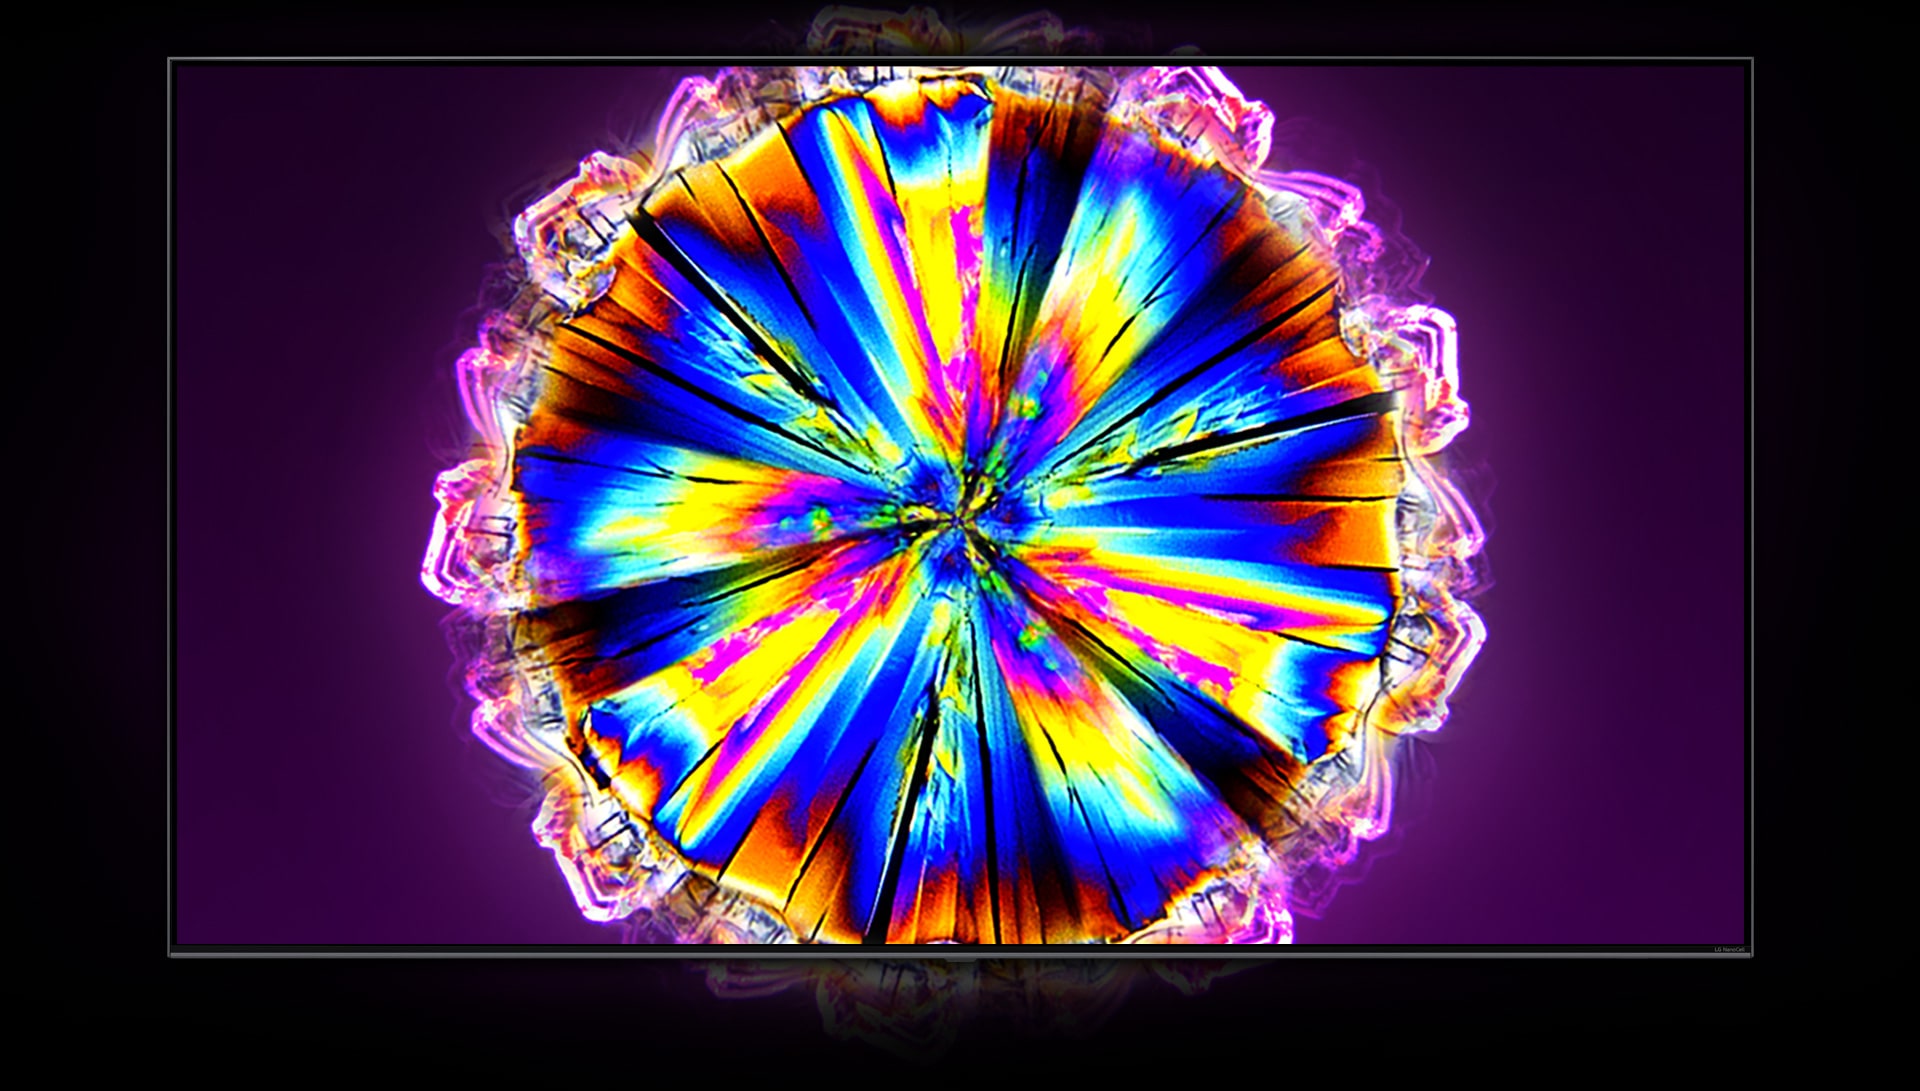 Ein Fernseher schwebt auf einem violetten Hintergrund. Auf dem Bildschirm wird ein bunt leuchtender Kristall dargestellt.